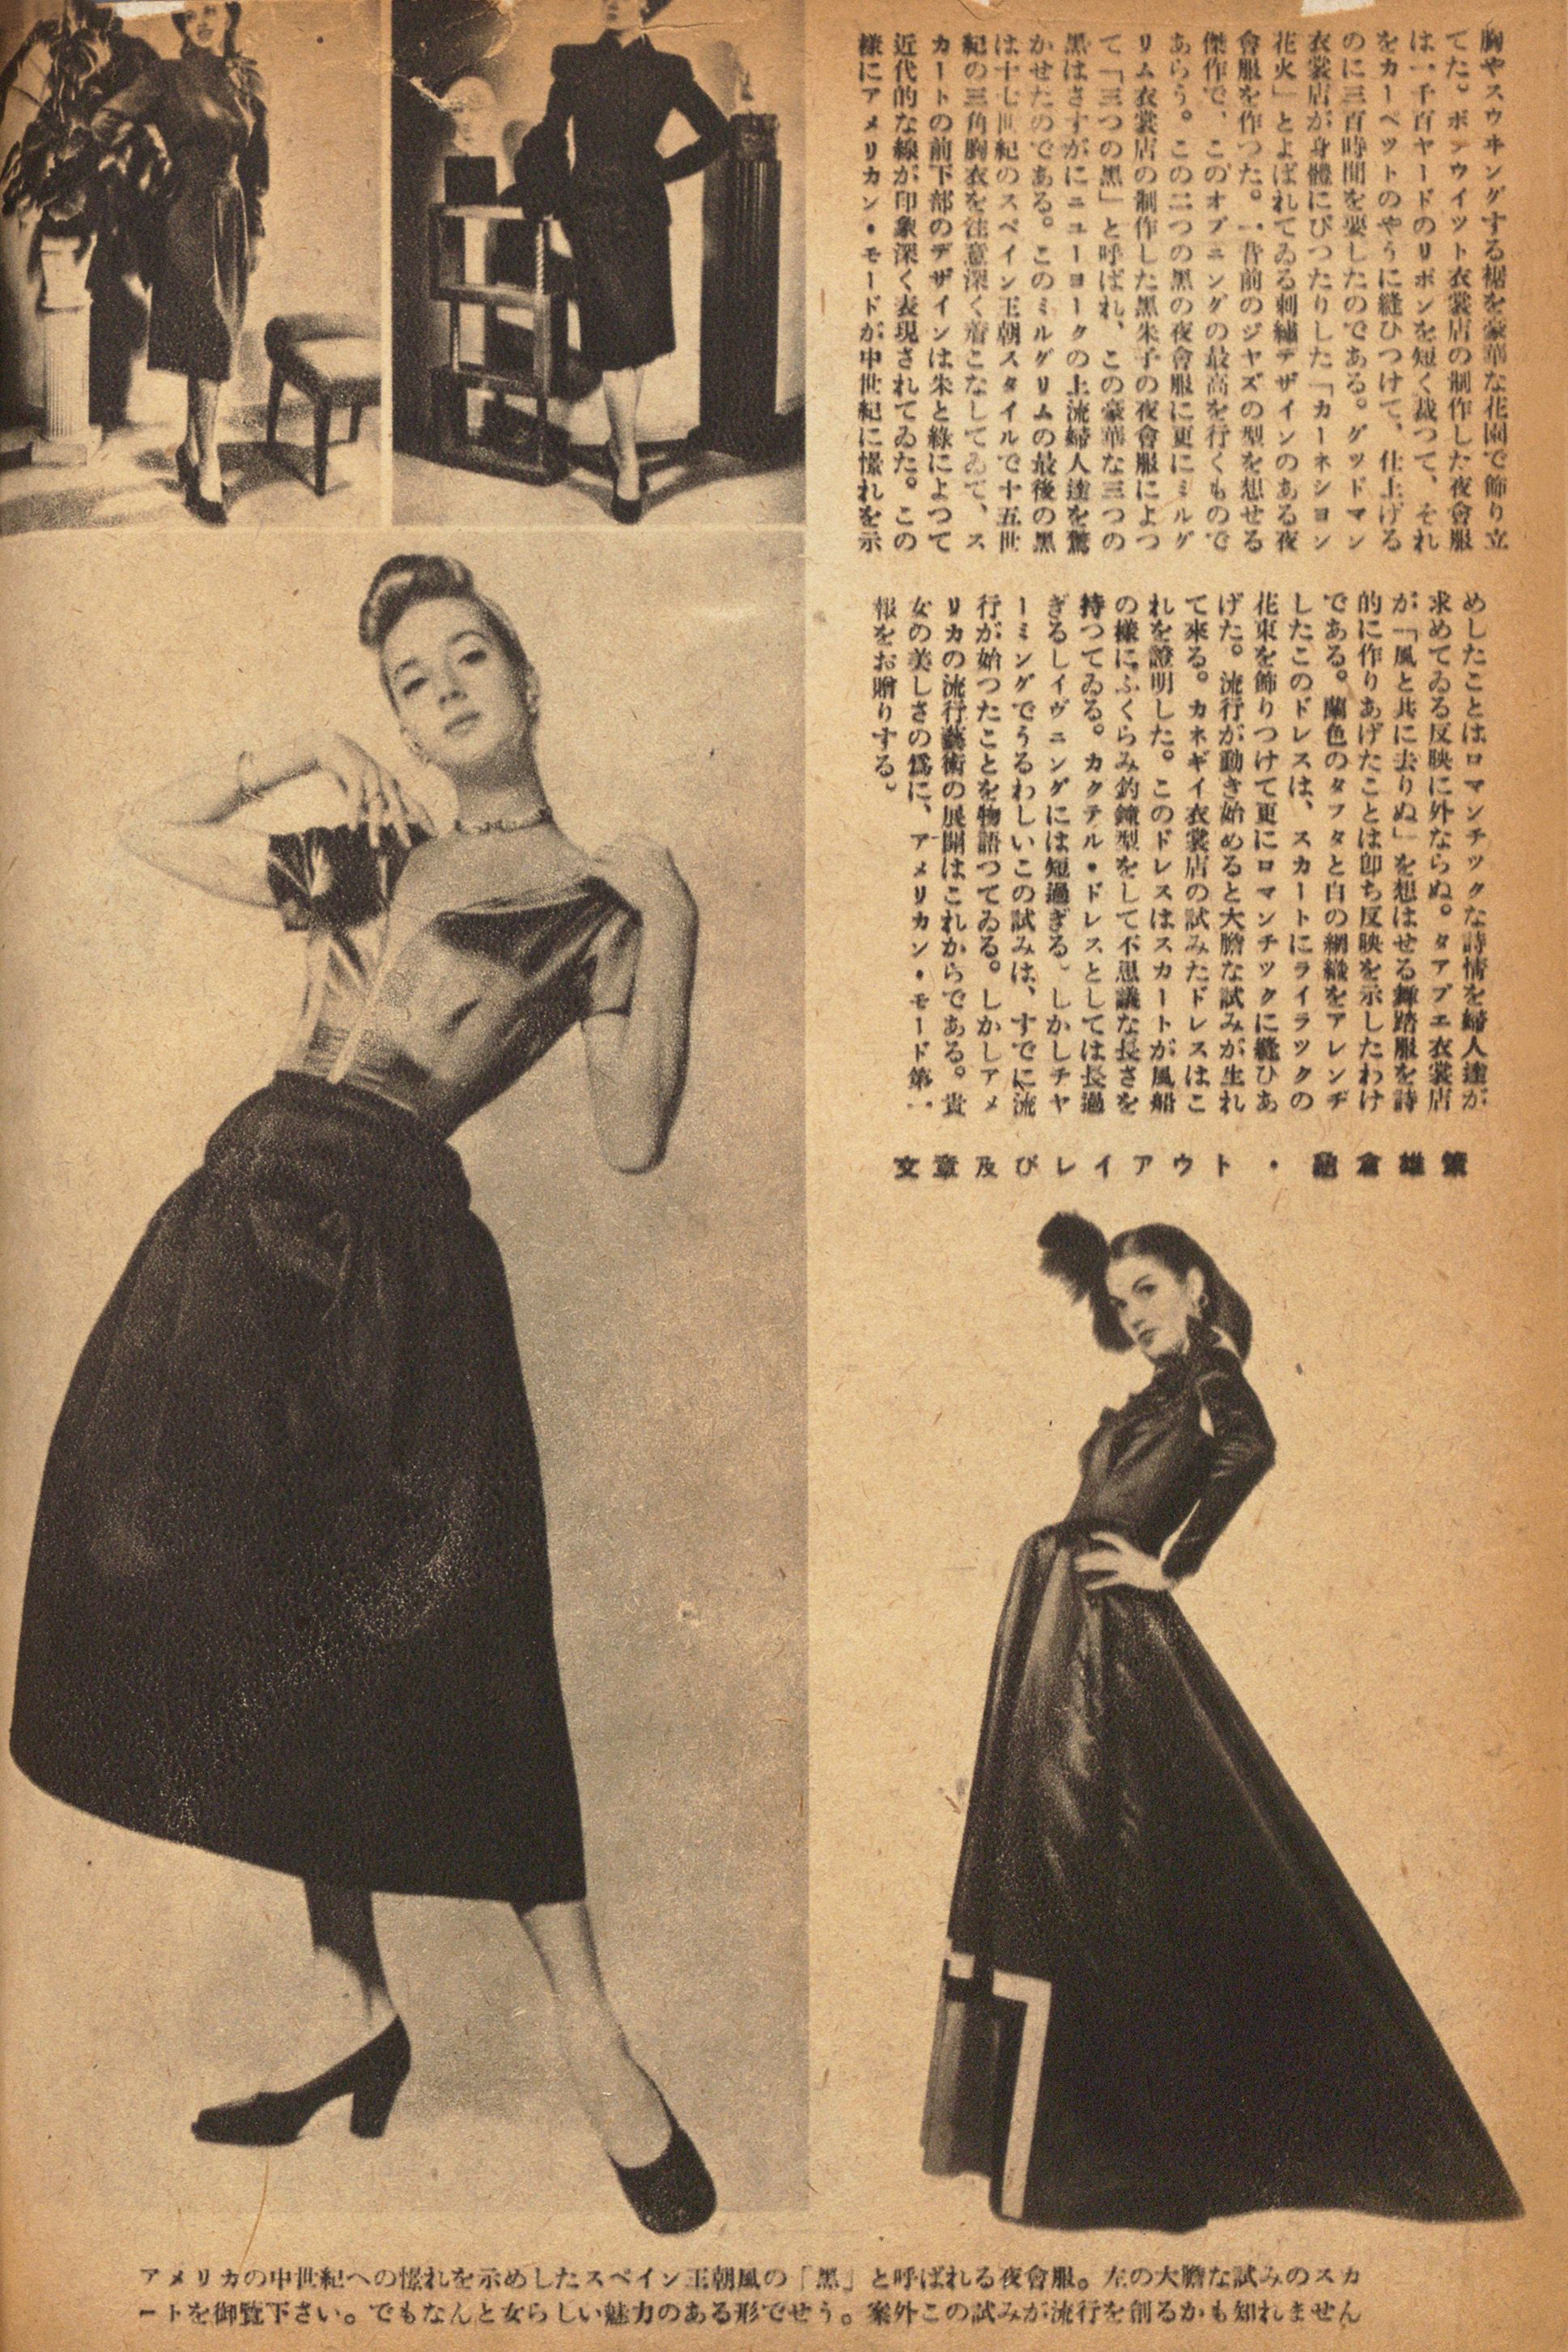 戦後 東京は一面の焼け野原 そんな時 いち早く欧米のファッションを紹介